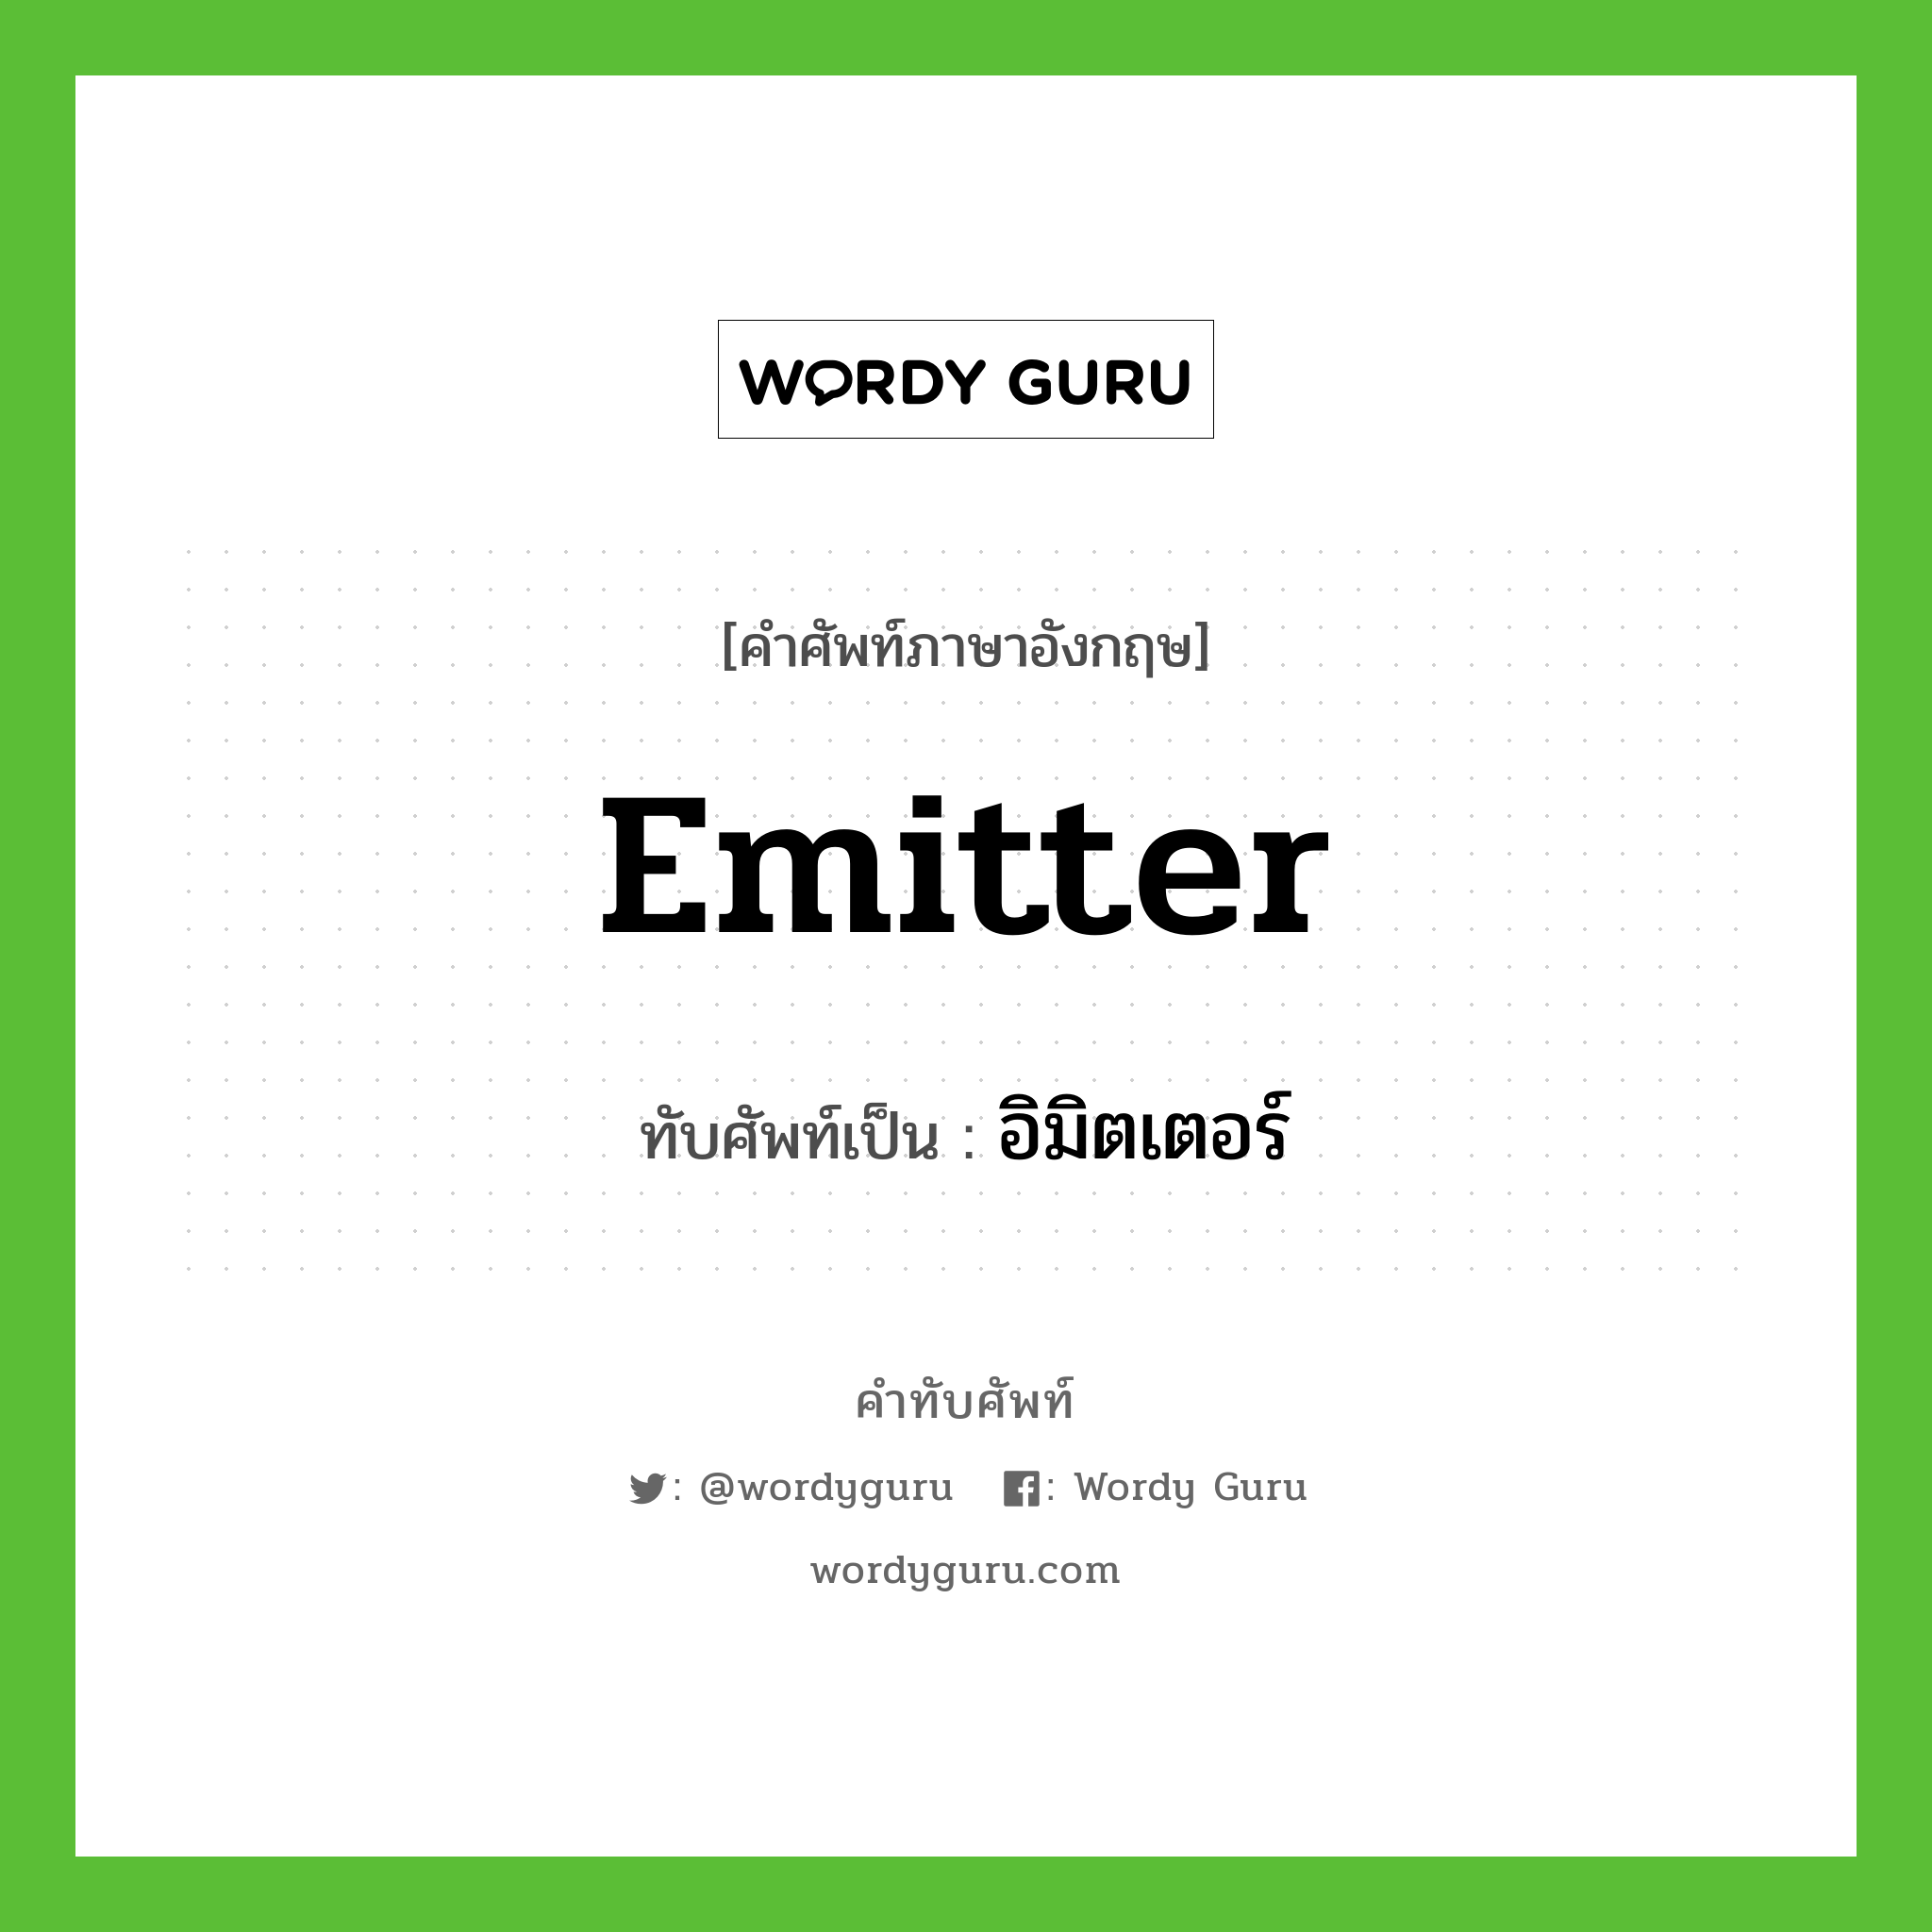 emitter เขียนเป็นคำไทยว่าอะไร?, คำศัพท์ภาษาอังกฤษ emitter ทับศัพท์เป็น อิมิตเตอร์